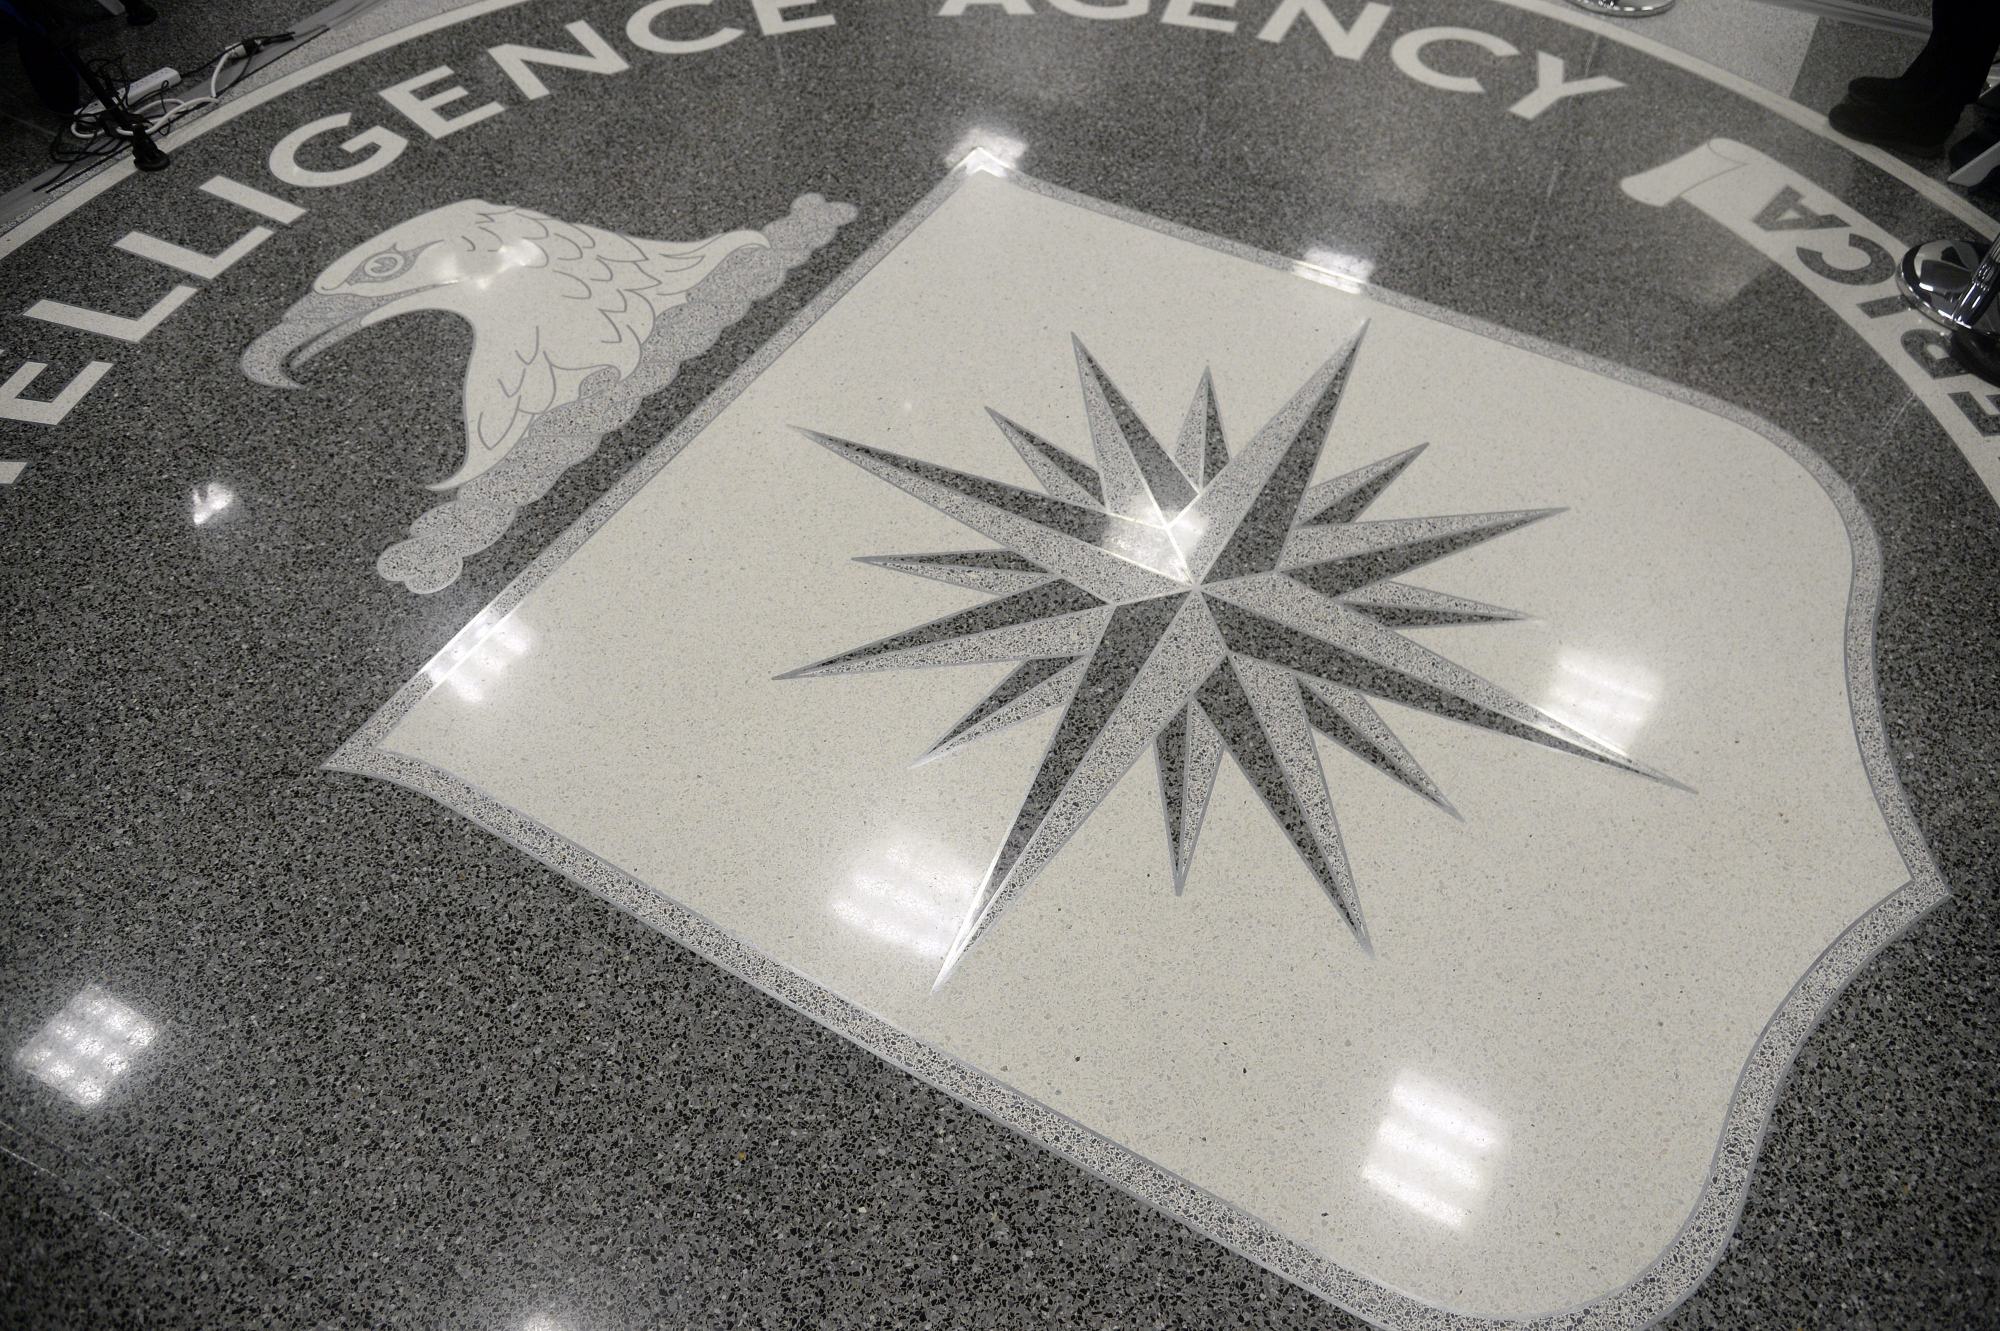 ΗΠΑ: Πώς η CIA παρακίνησε τους Ρώσους να δώσουν πληροφορίες